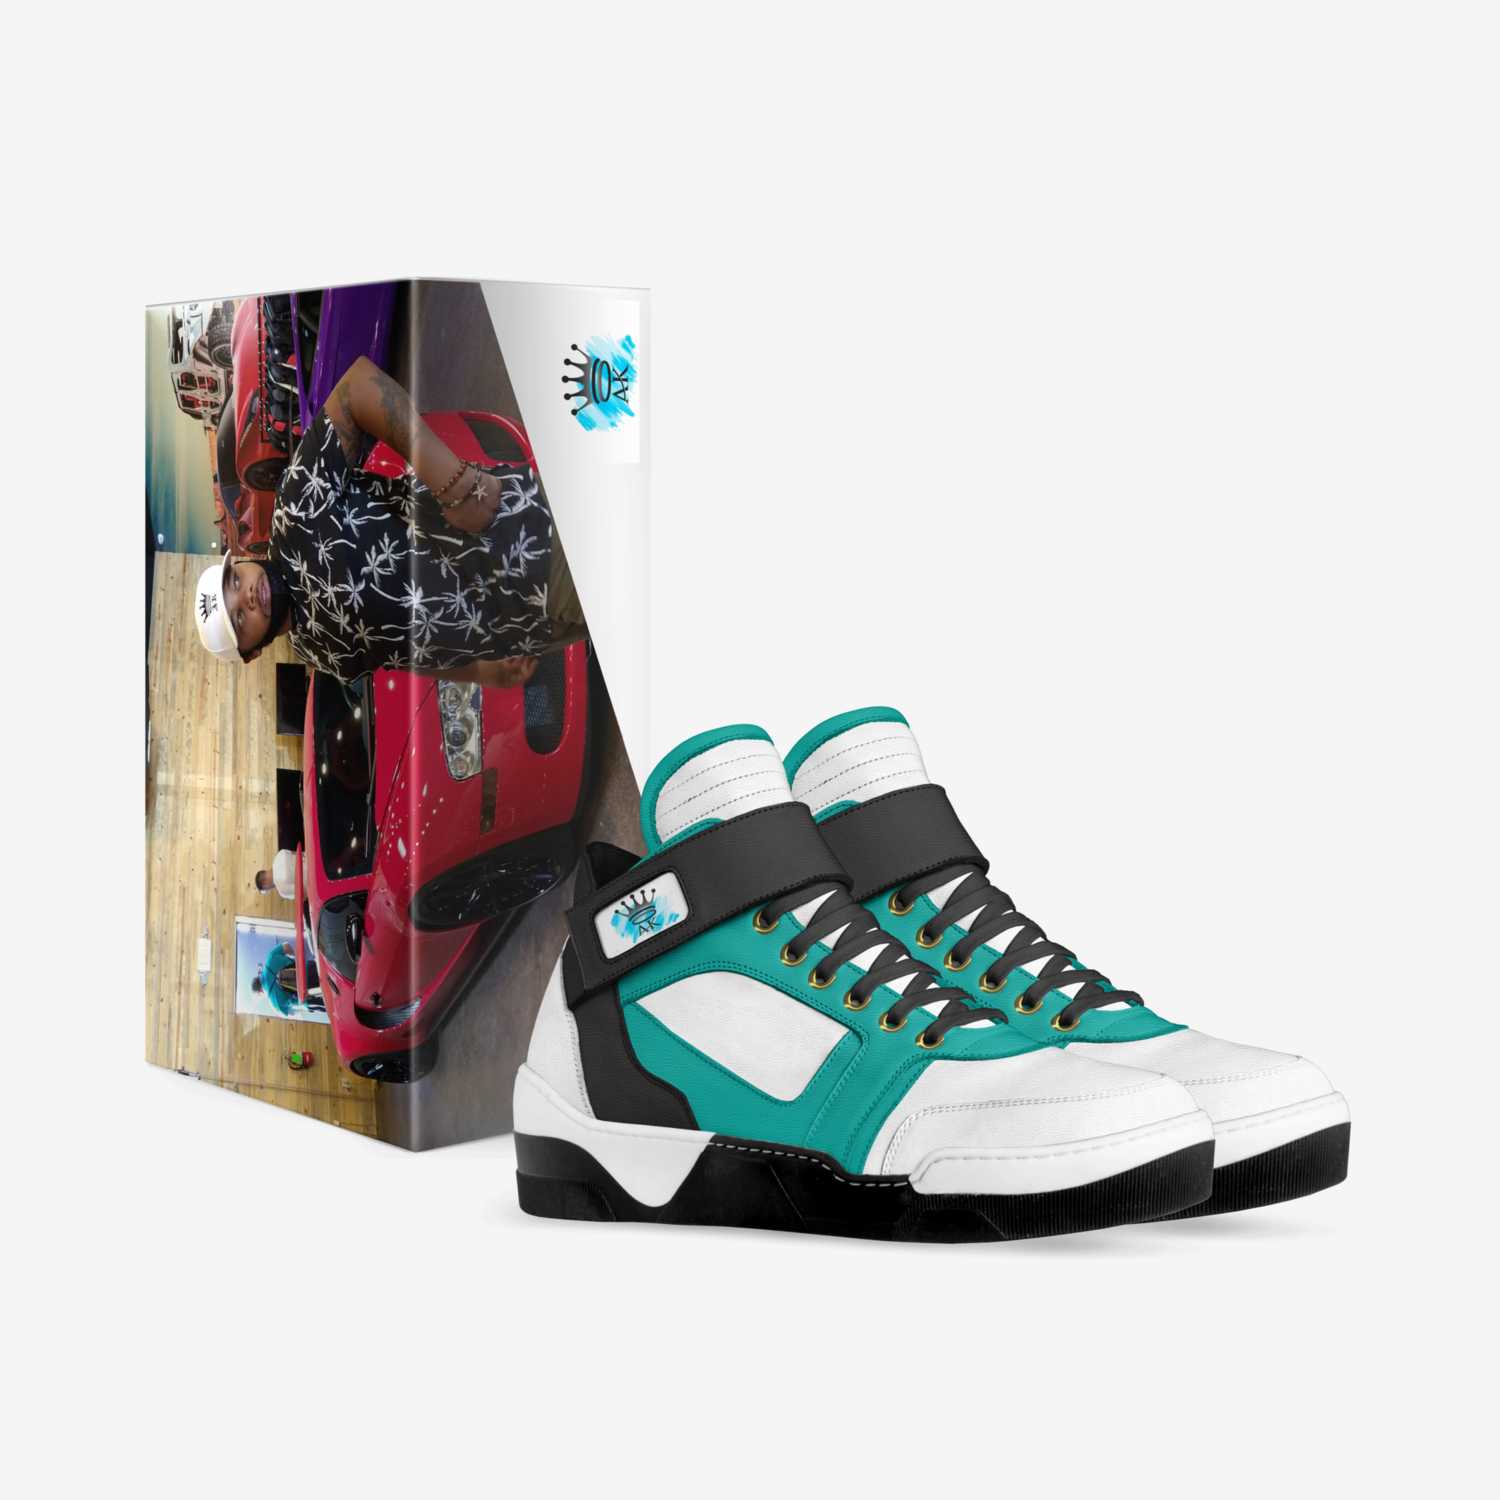 FB I.V.A.S. custom made in Italy shoes by Ty'Re Mullen | Box view